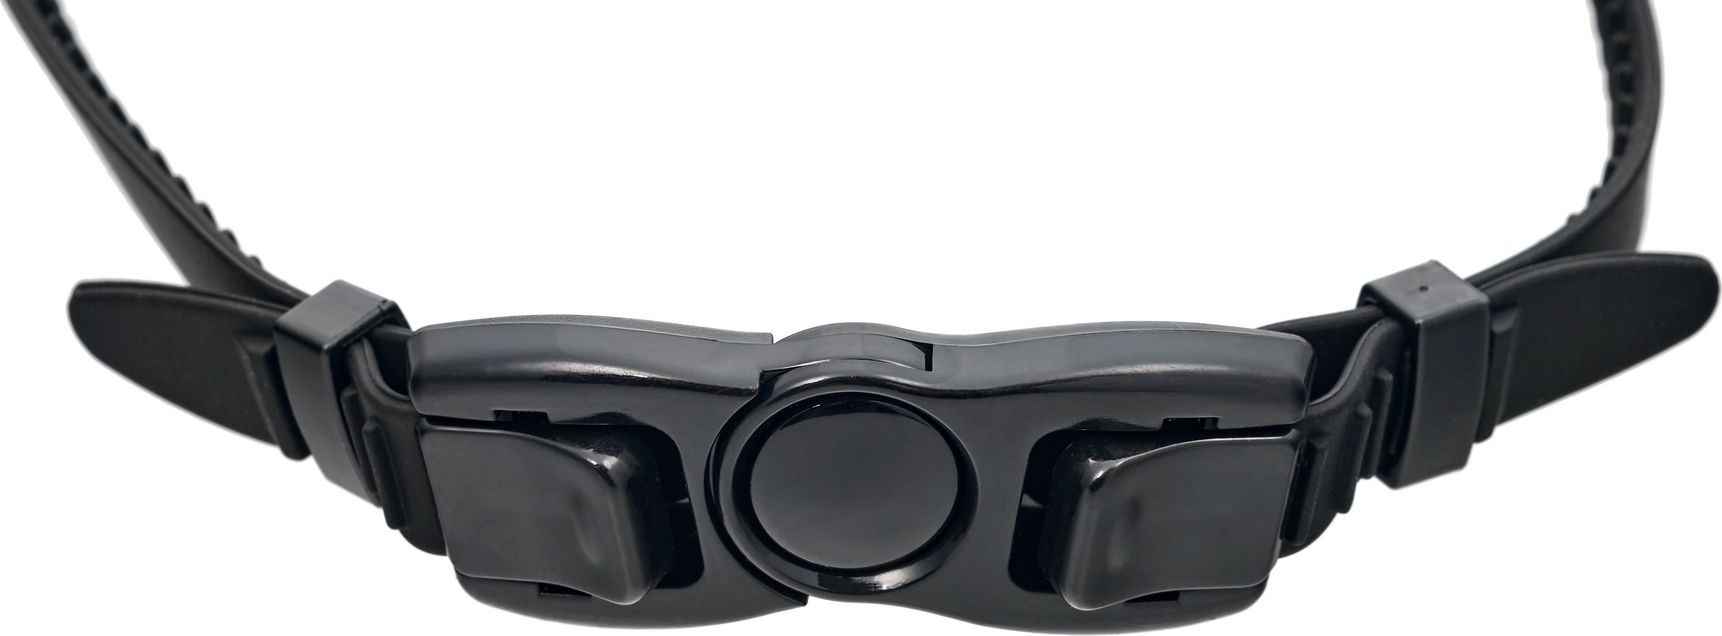 Очки для плавания Bradex, серия «Комфорт Плюс», черные, цвет линзы-зеркальный